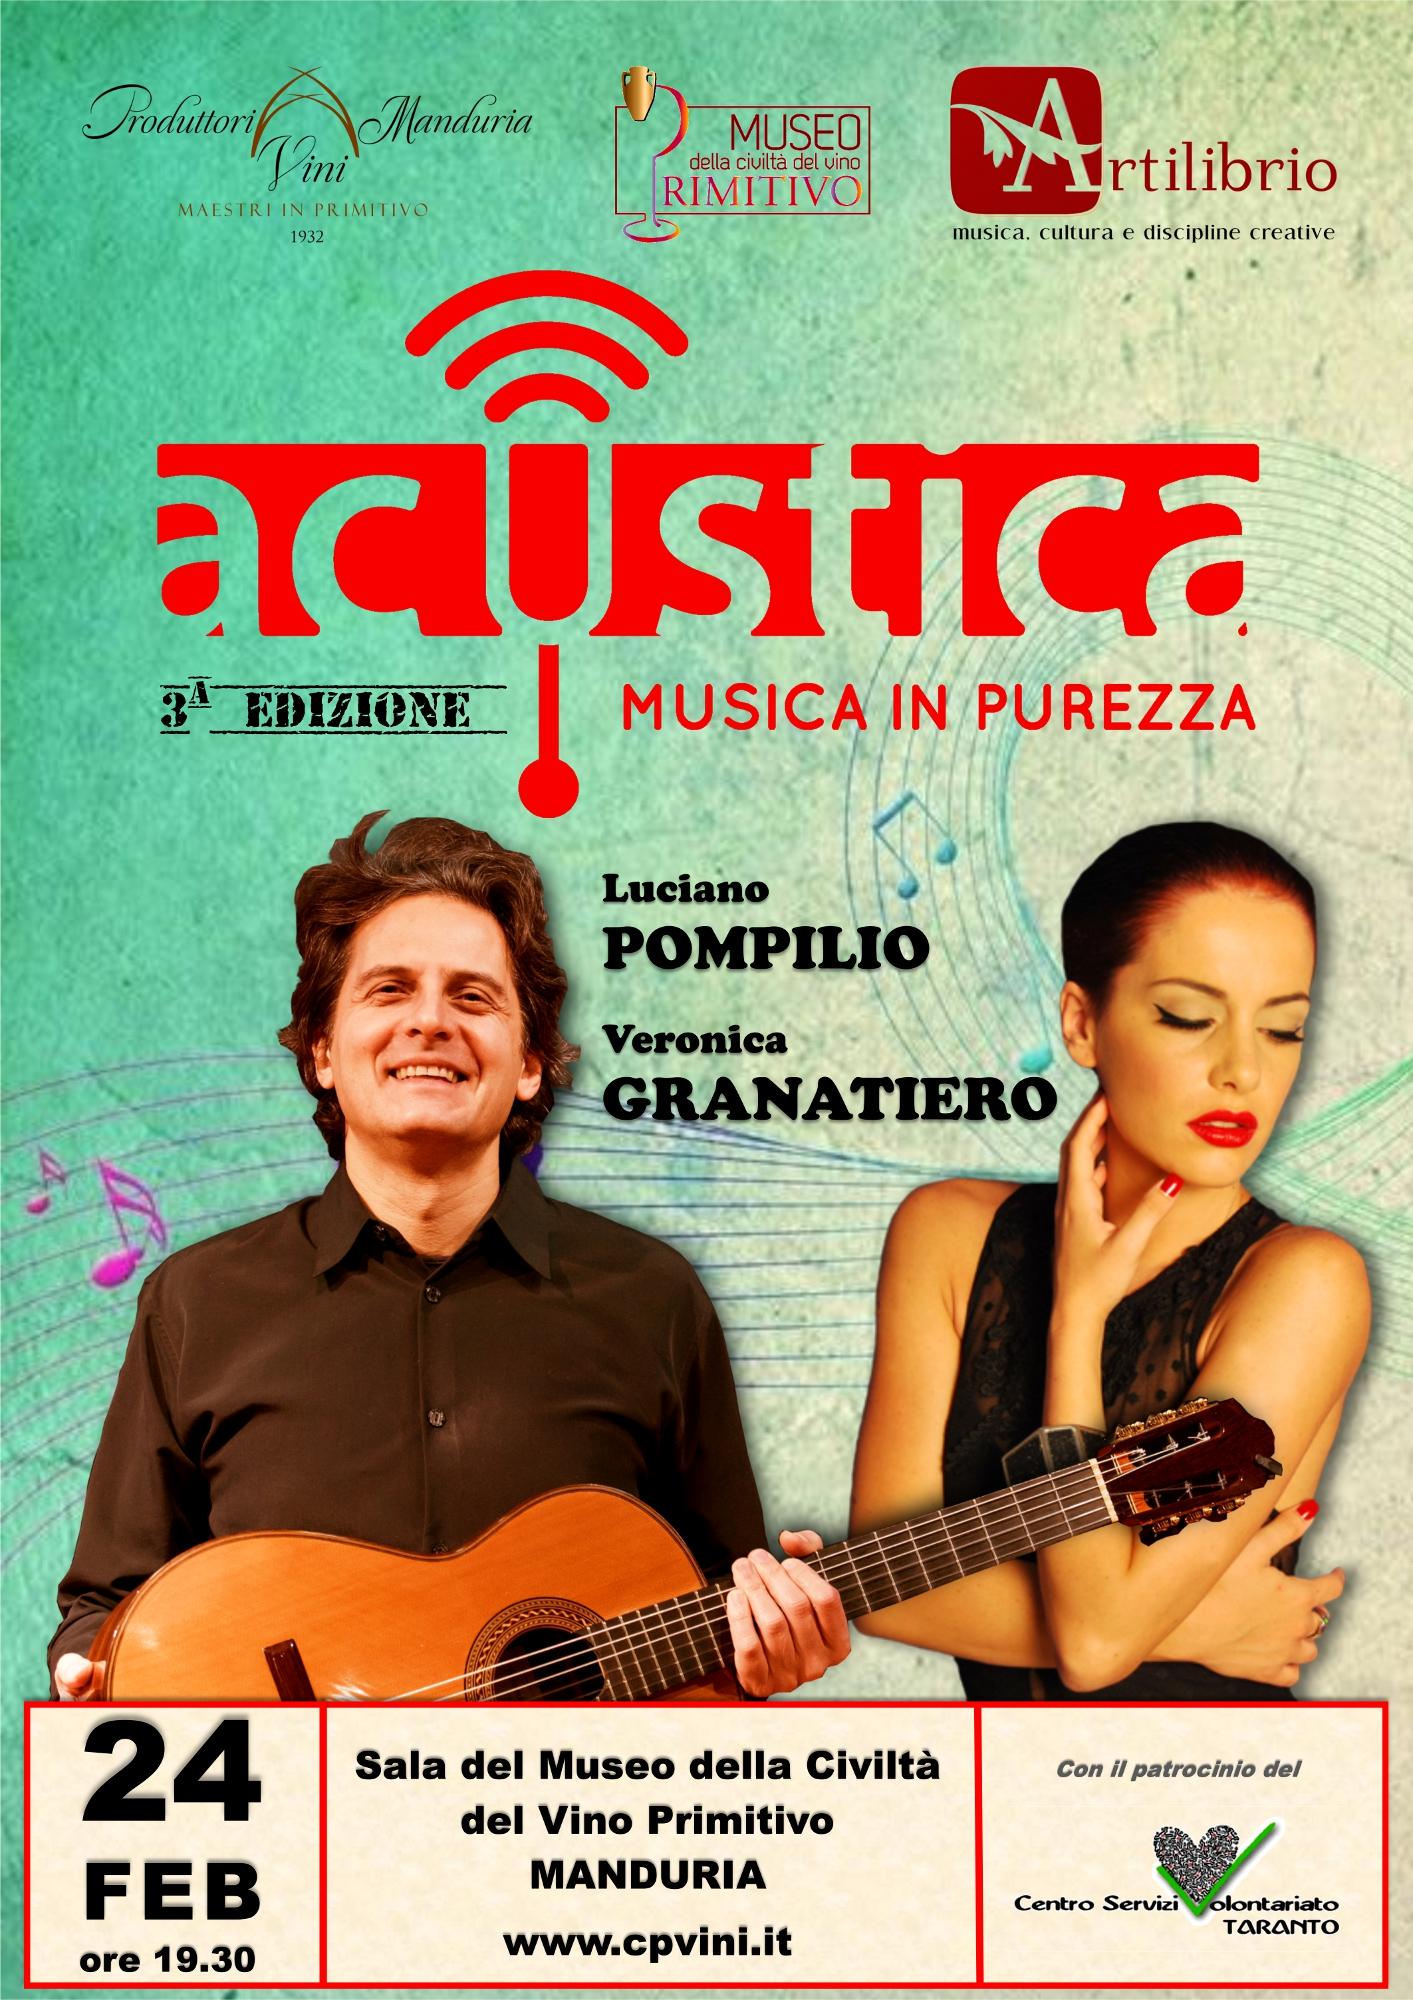 MANDURIA. Sipario su Acustica con il duo chitarra e voce Pompilio-Granatiero